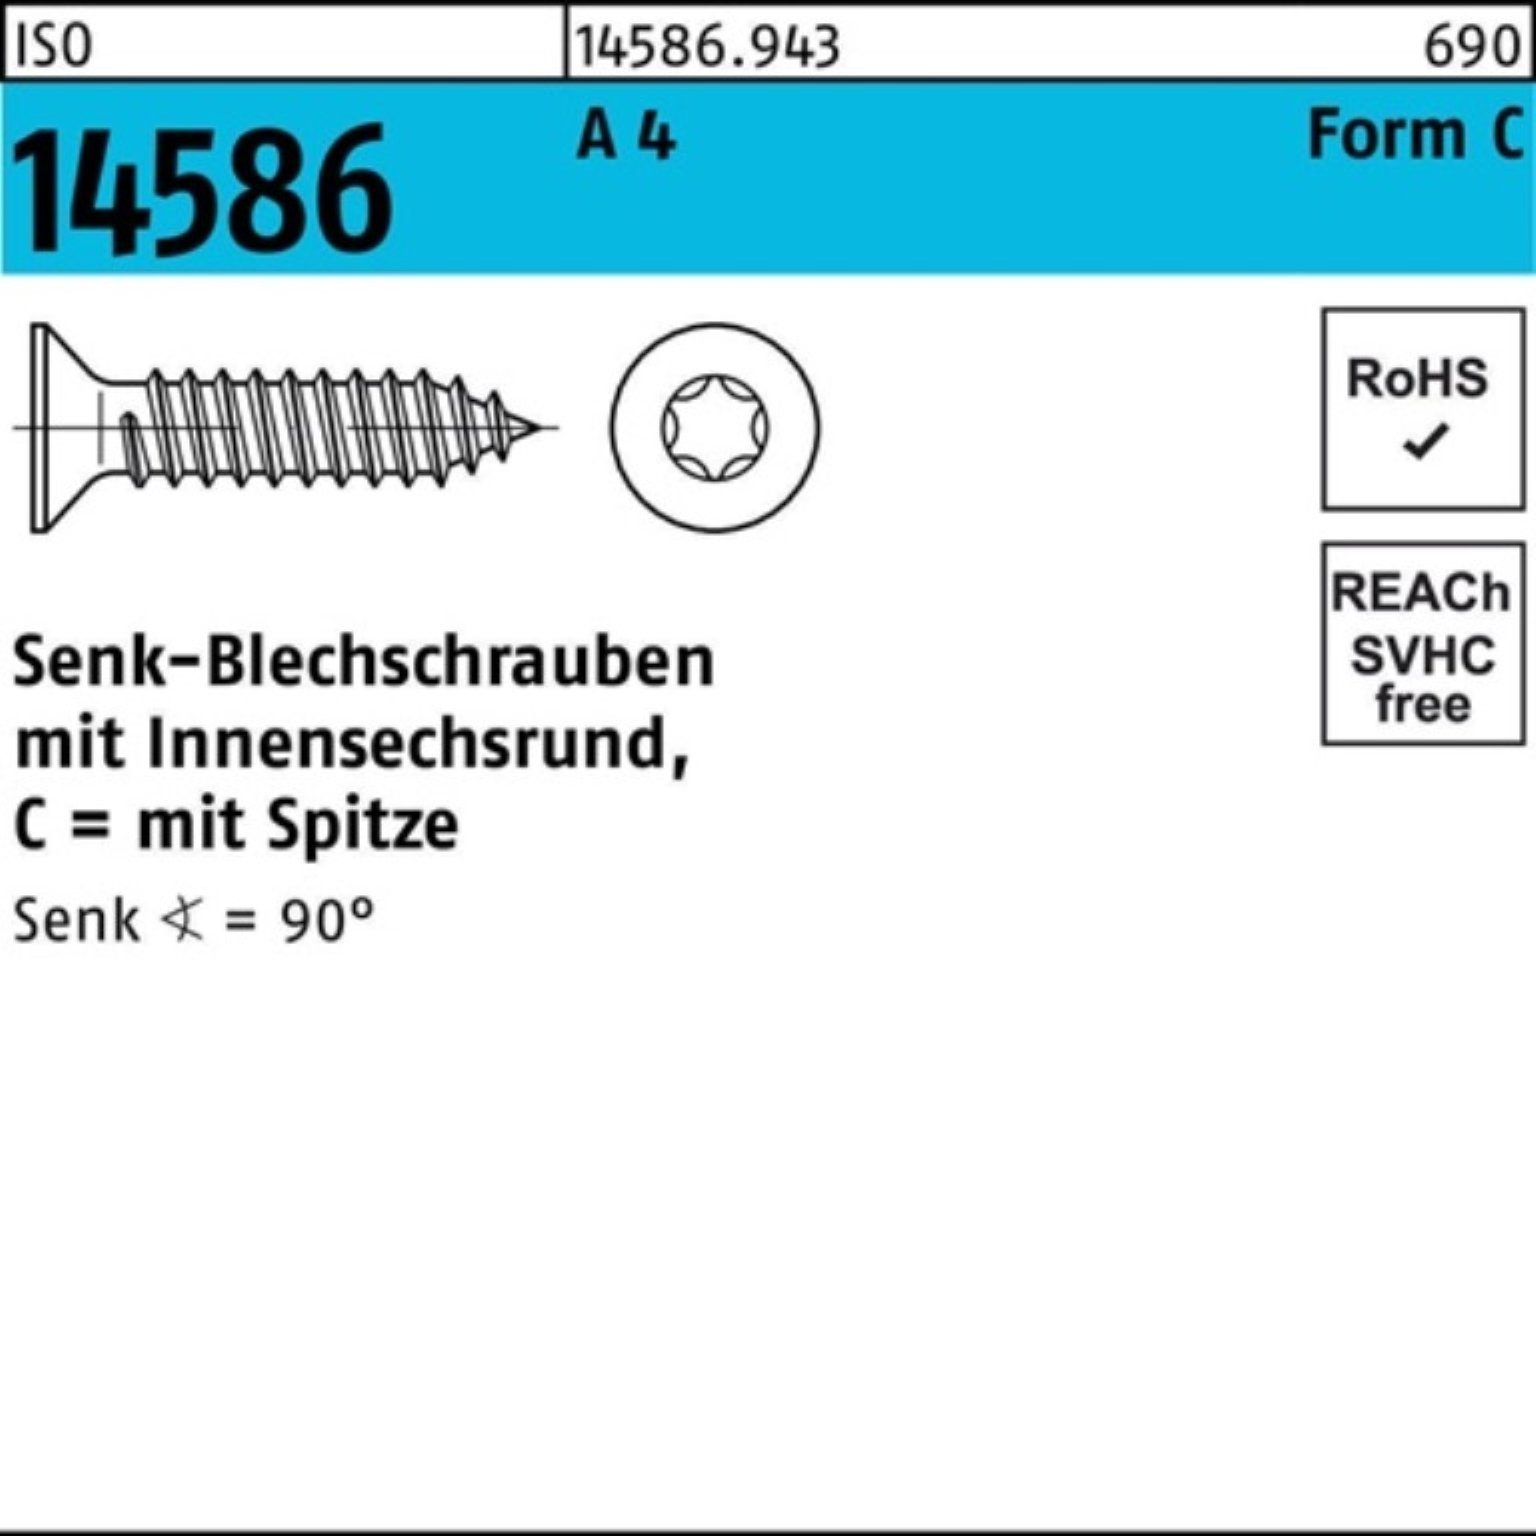 Reyher Schraube 1000er Pack Senkblechschraube ISO 14586 ISR/Spitze 3,5x 16-T15 A 4 100